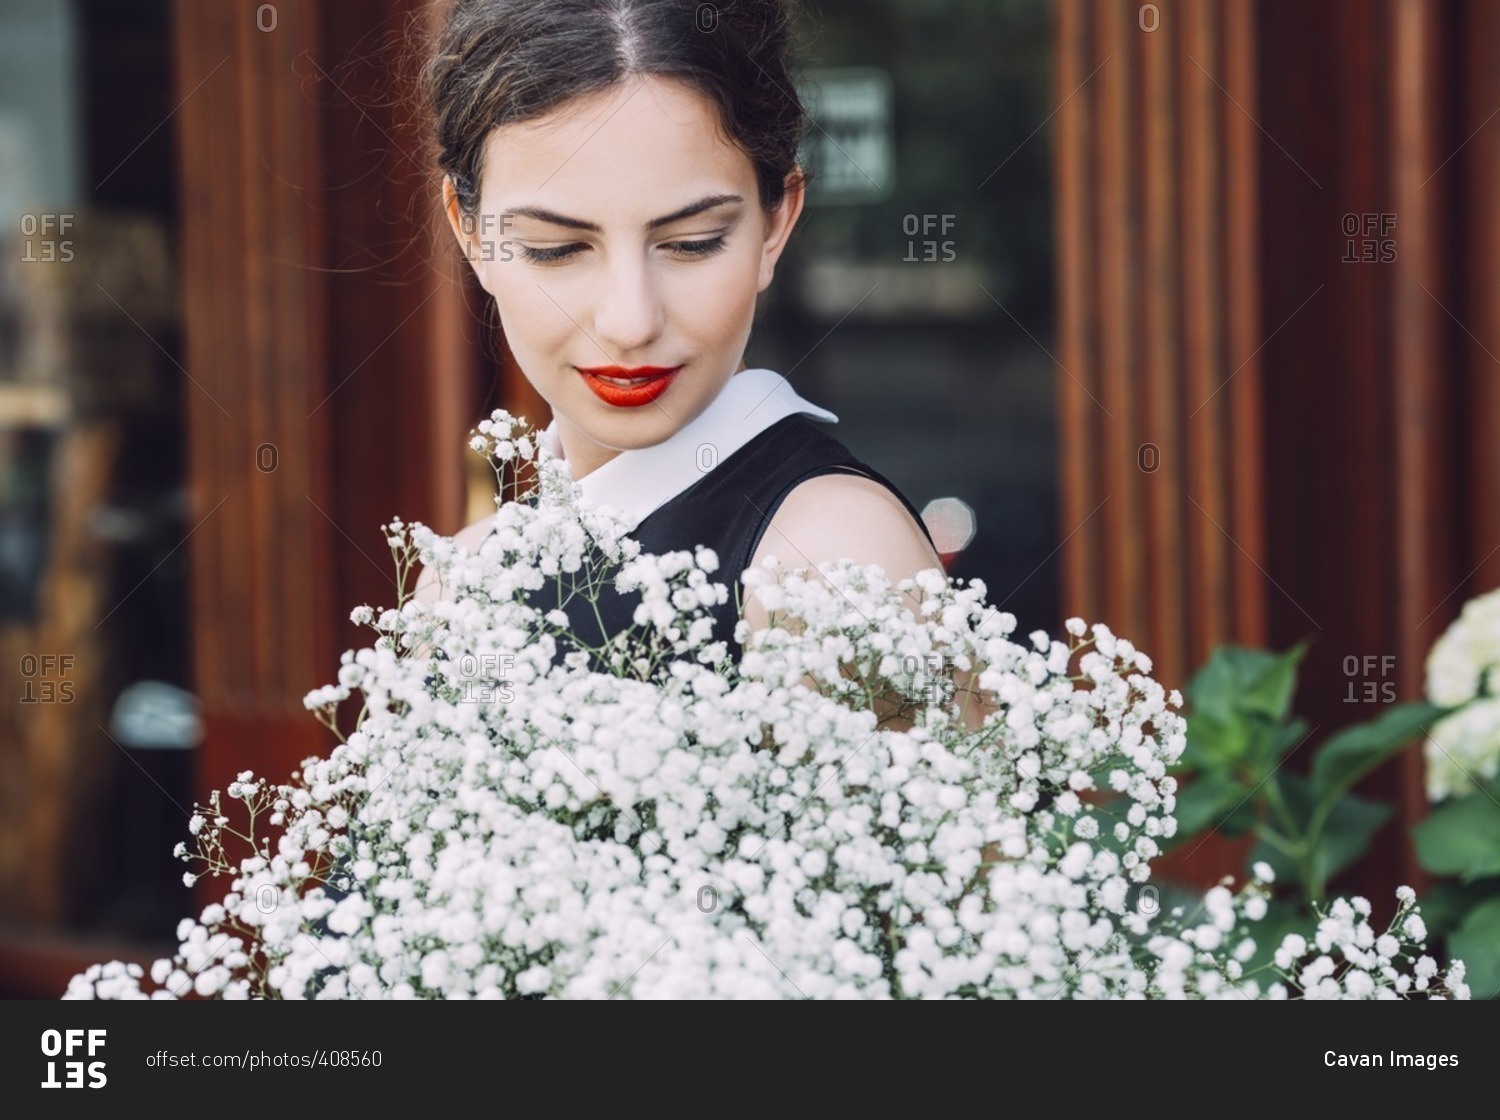 Female florist holding white flowers outside flower shop